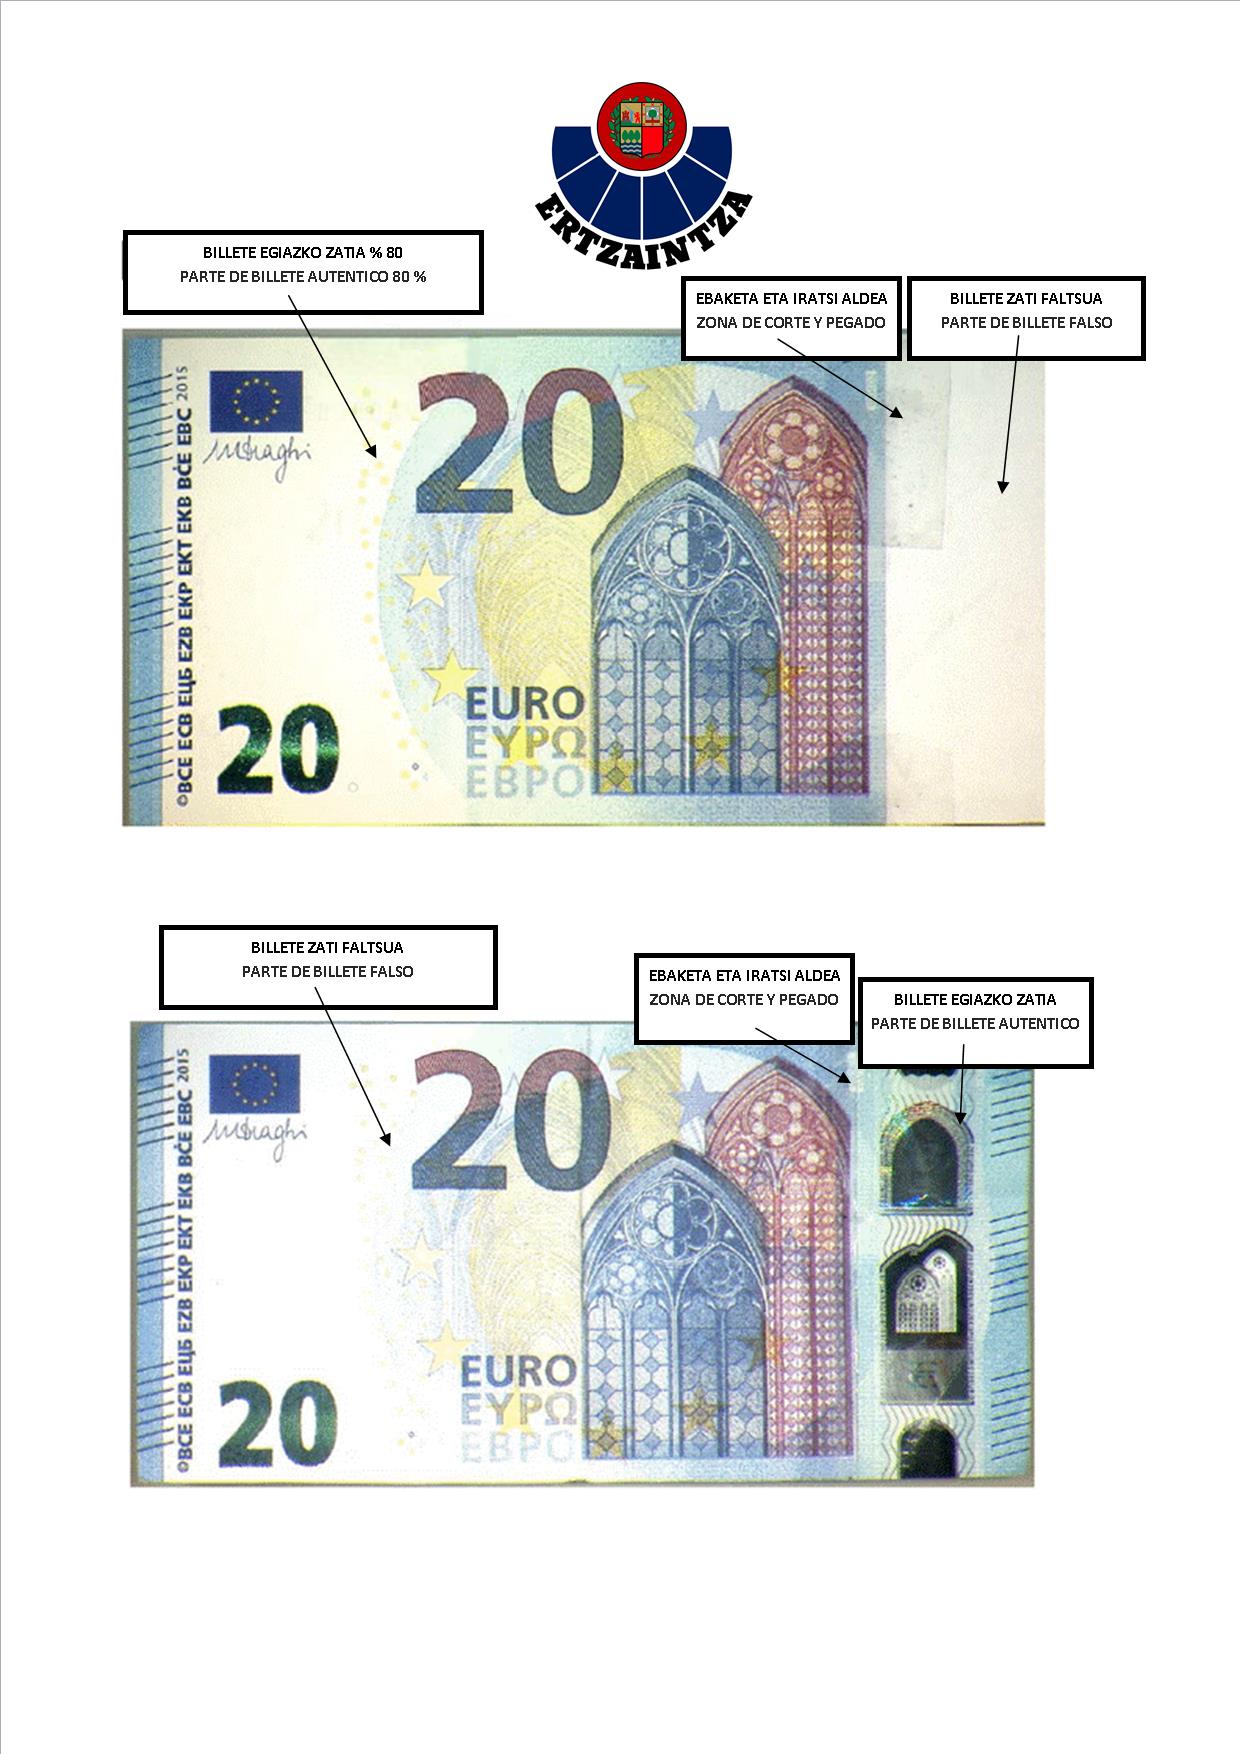 Alerta de la Ertzaintza: Se han detectado billetes falsos de 20 euros en  Bizkaia - GipuzkoaGaur - Actualidad de Gipuzkoa